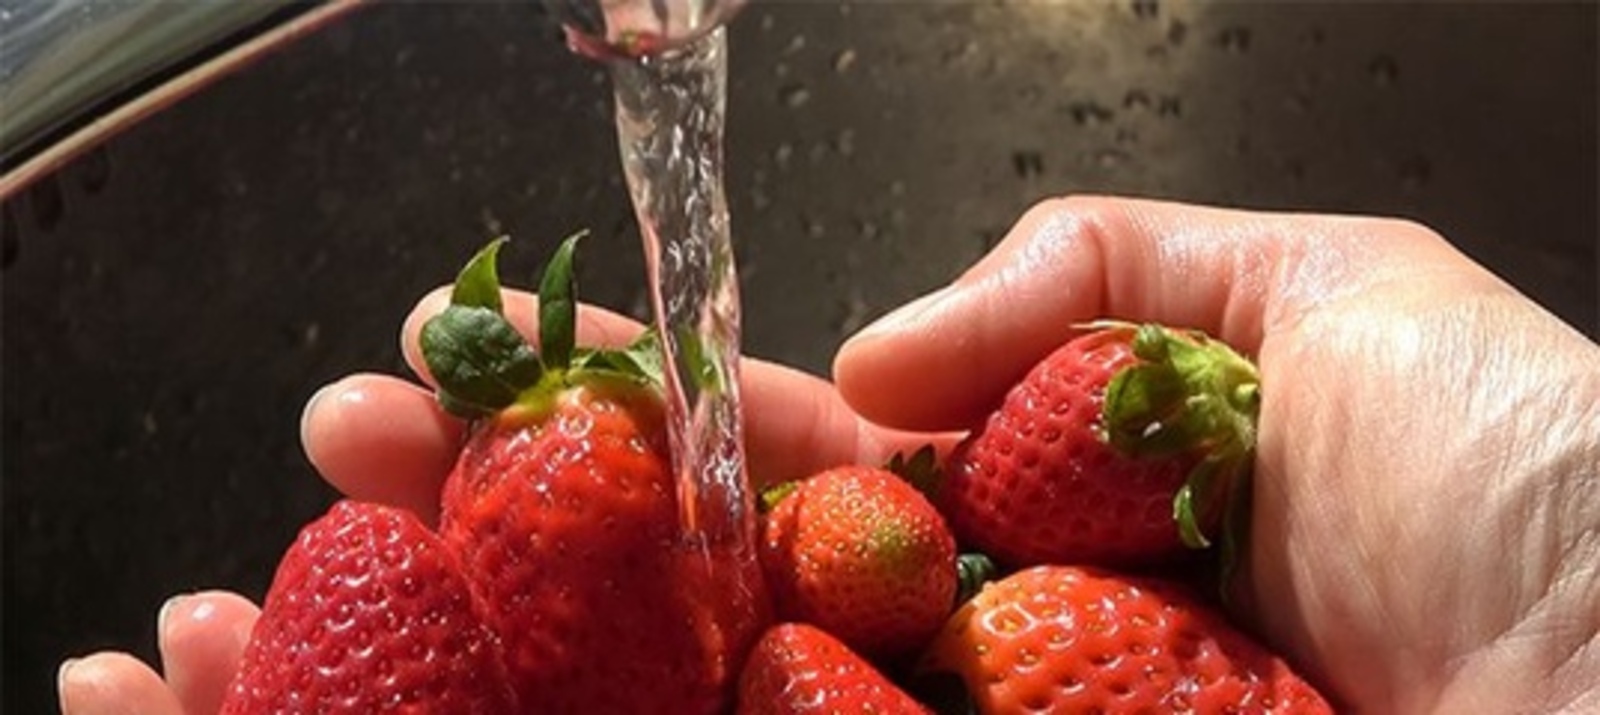 Как правильно мыть ягоды и фрукты?